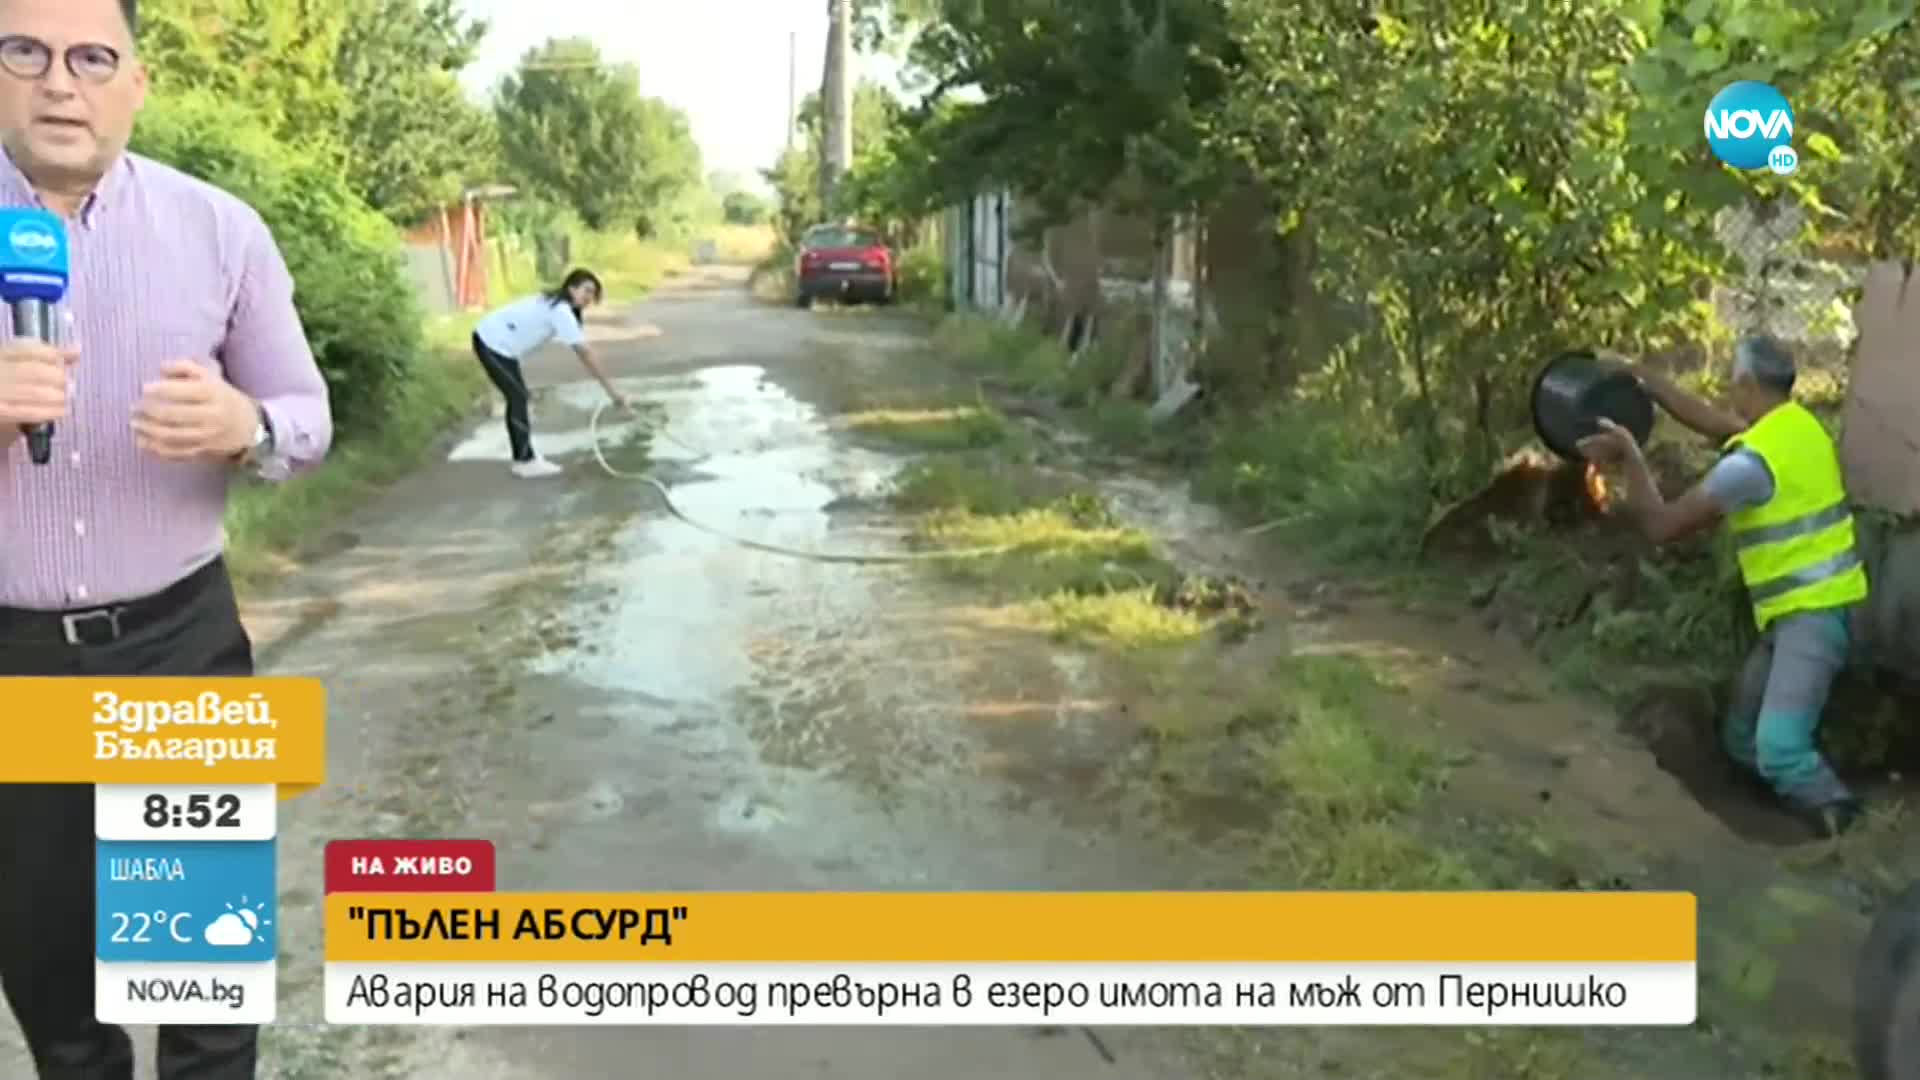 "ПЪЛЕН АБСУРД": Авария на водопровод превърна в езеро имота на мъж от Пернишко